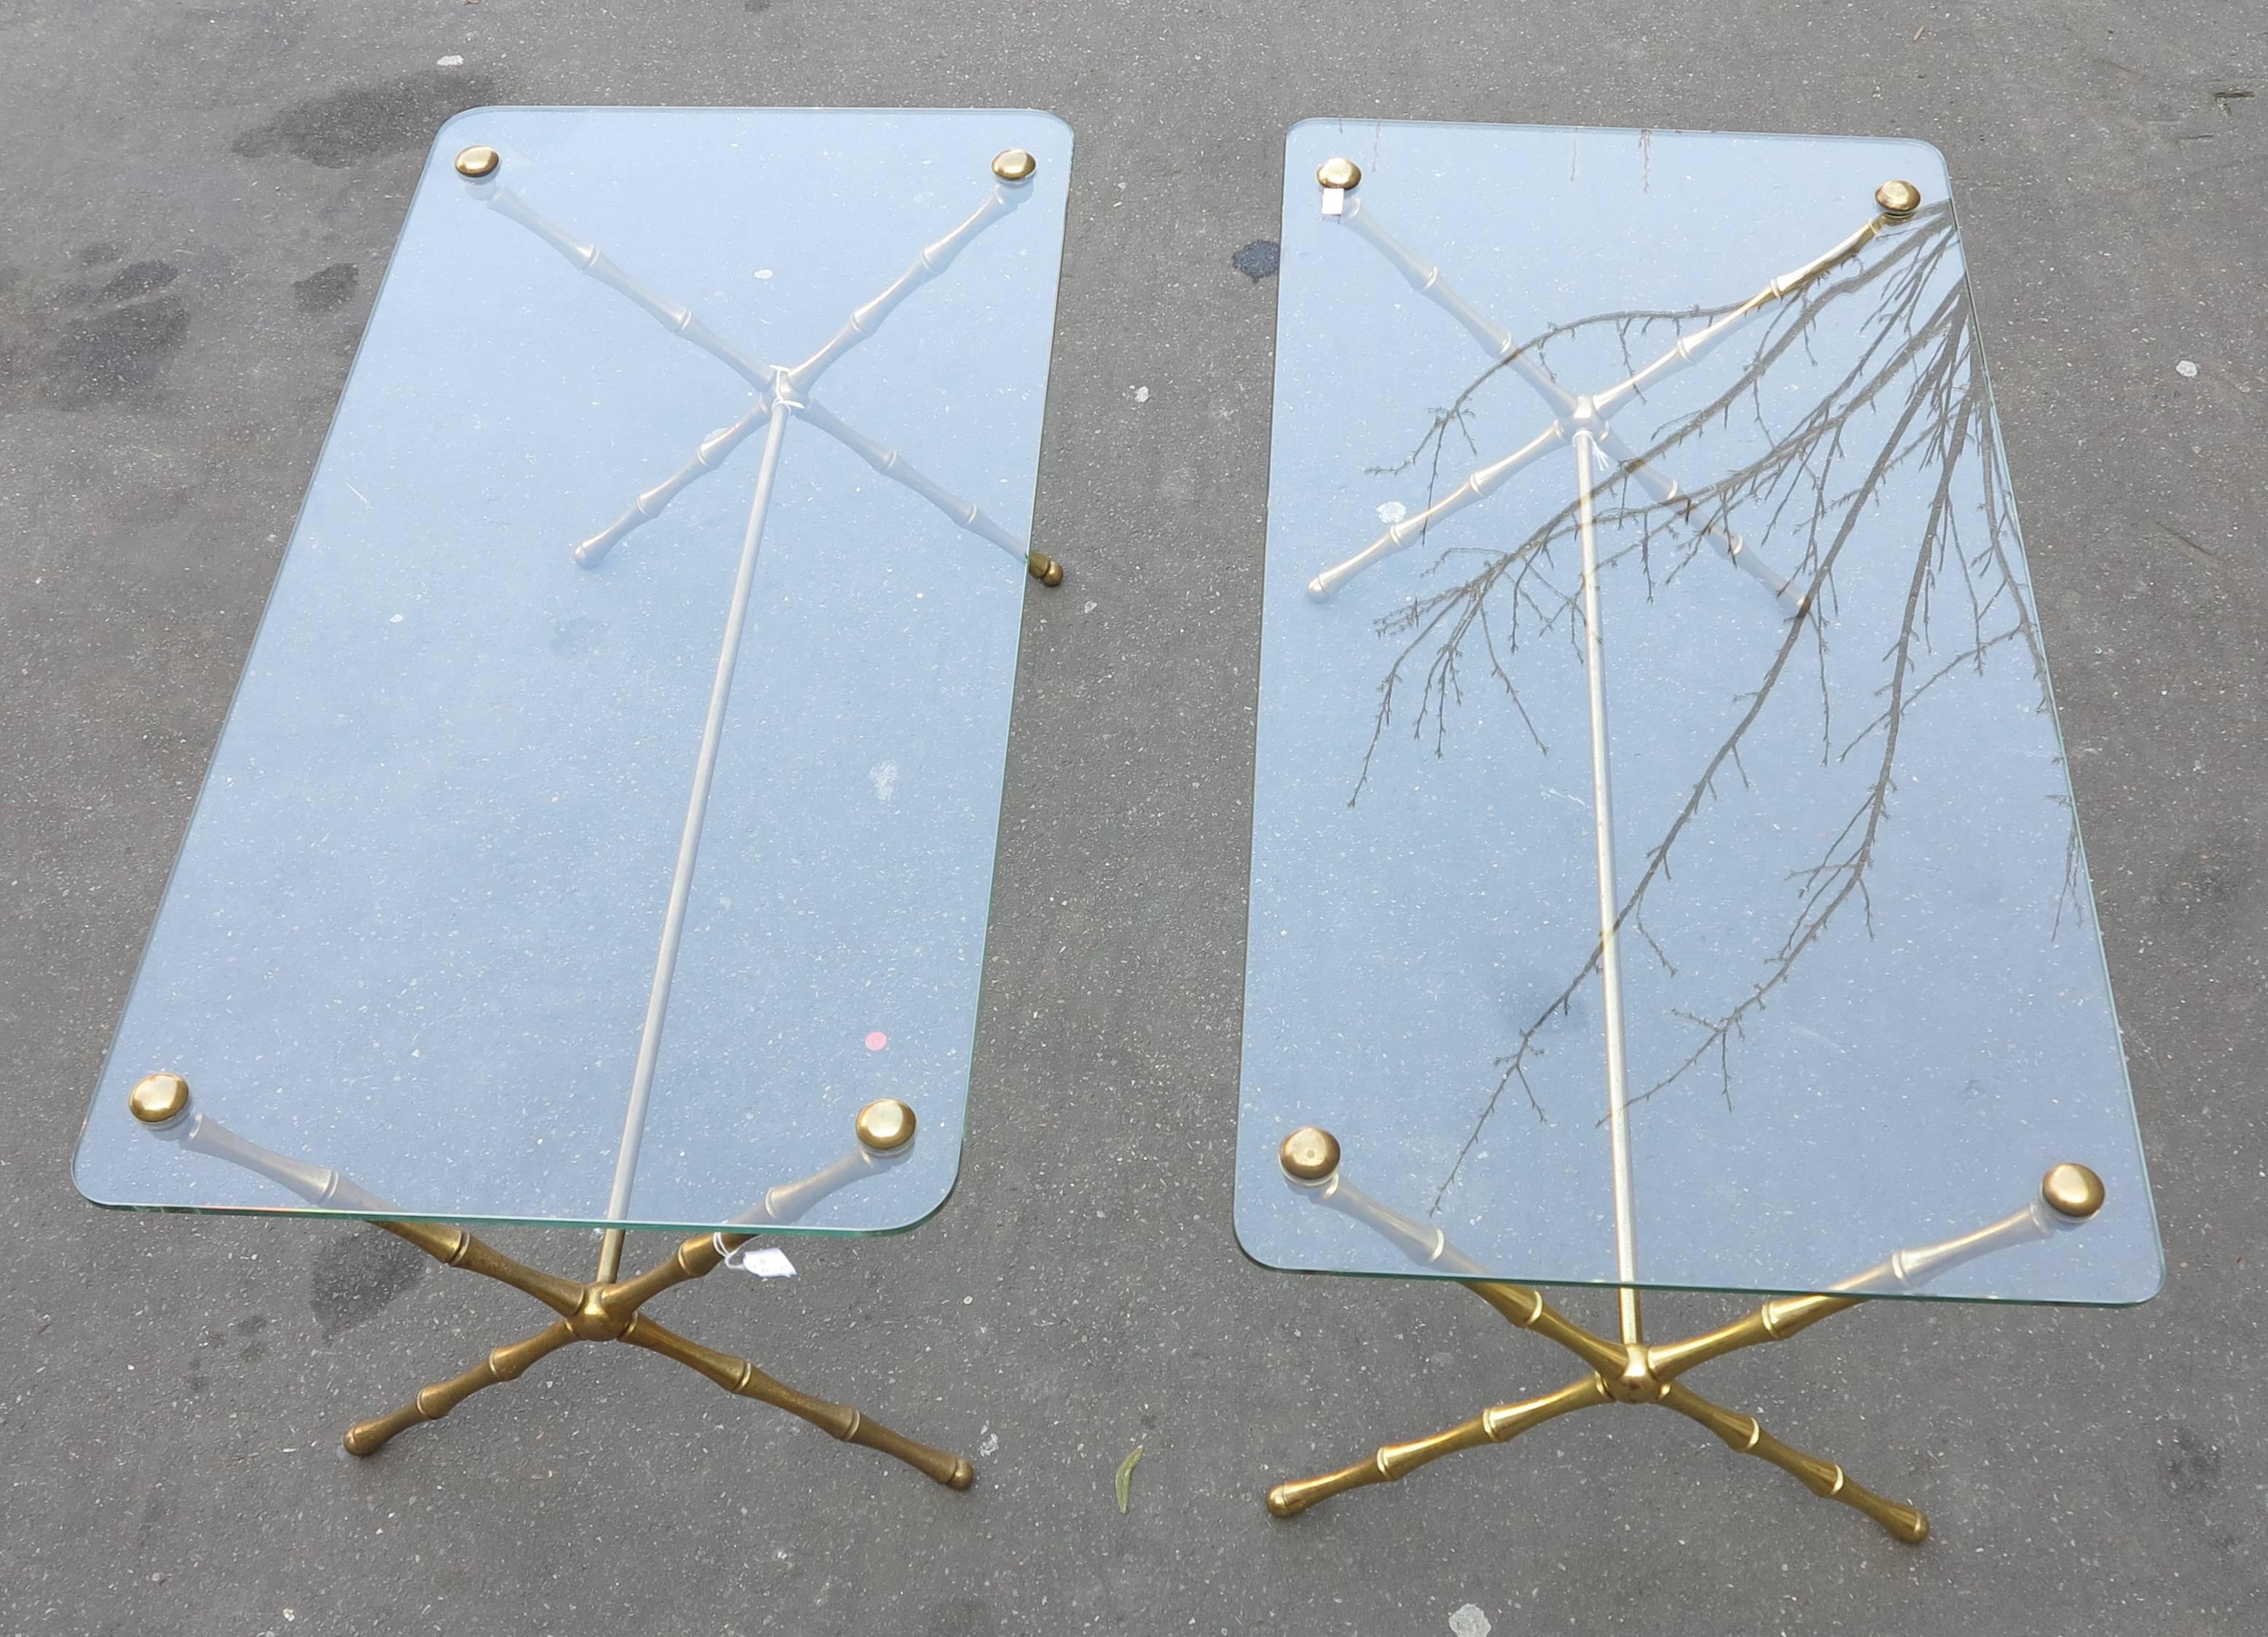 Paire de table basse et bronze montants en X, modèle bambou, toutes les pièces sont vissées, plateau en verre, bon état, circa 1950-1970.